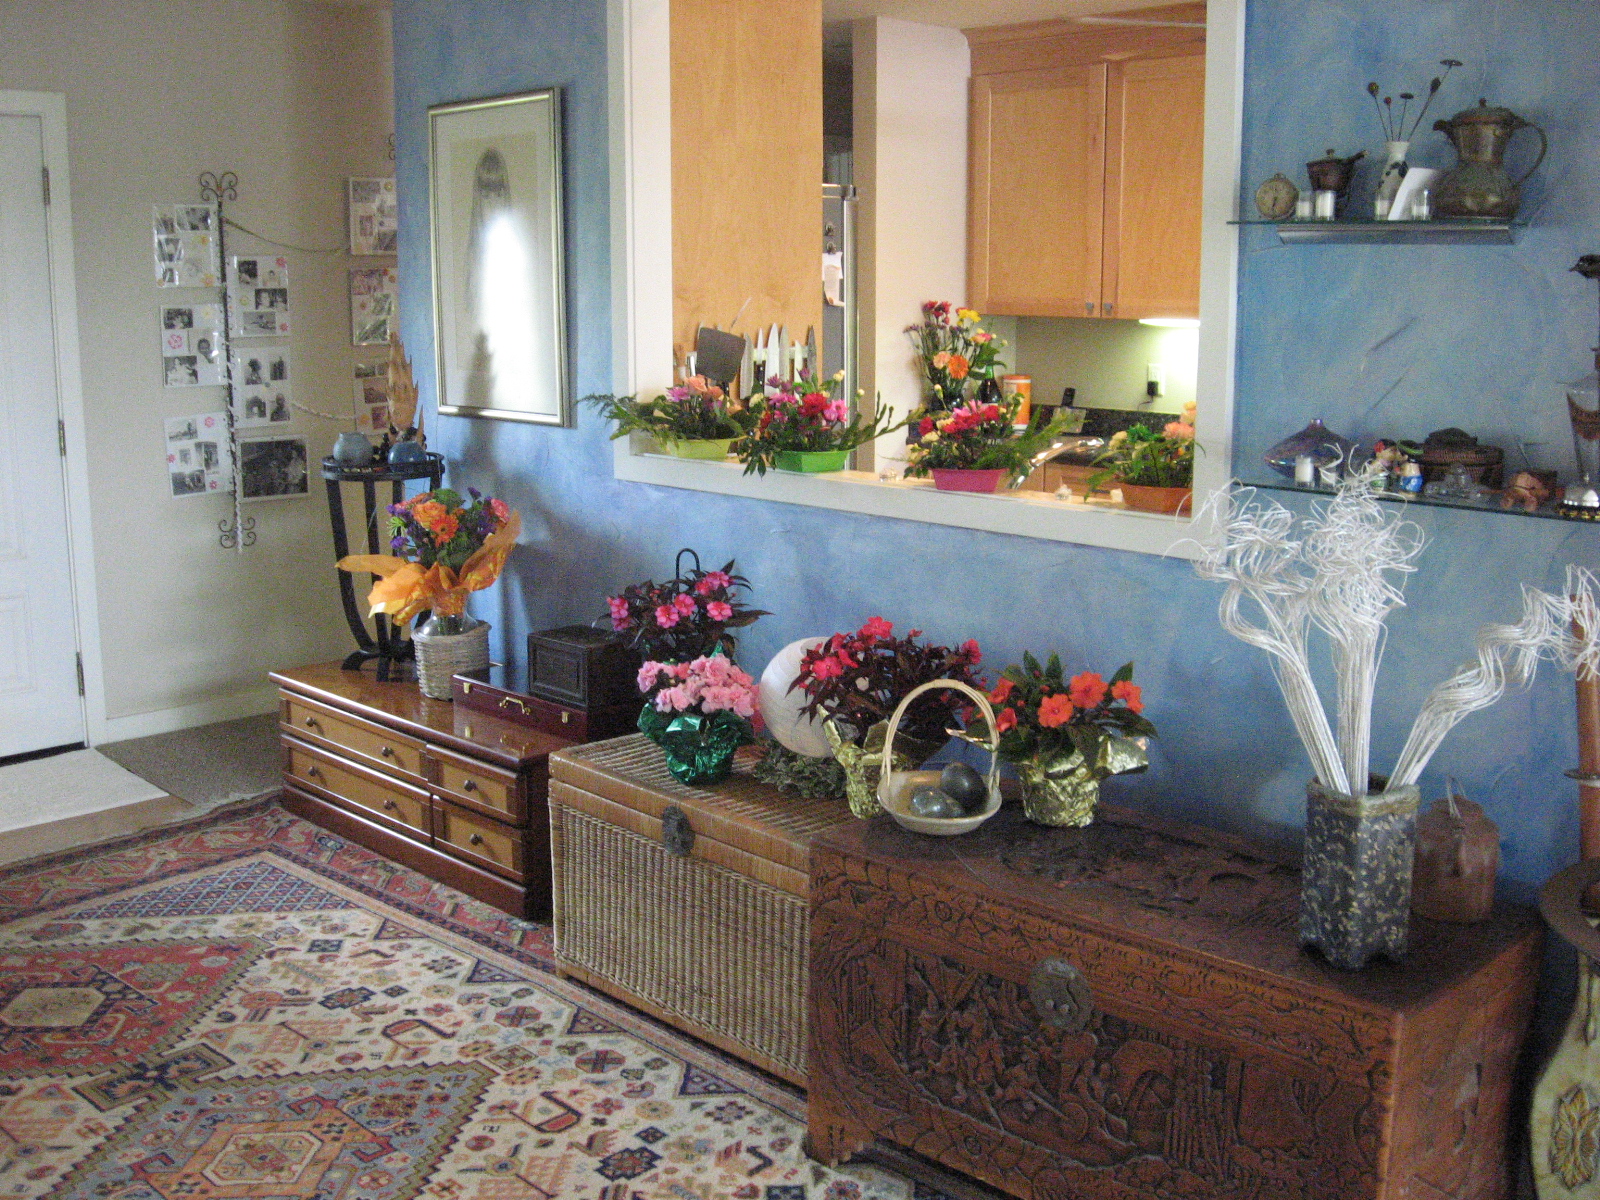 Flowers in the livingroom...